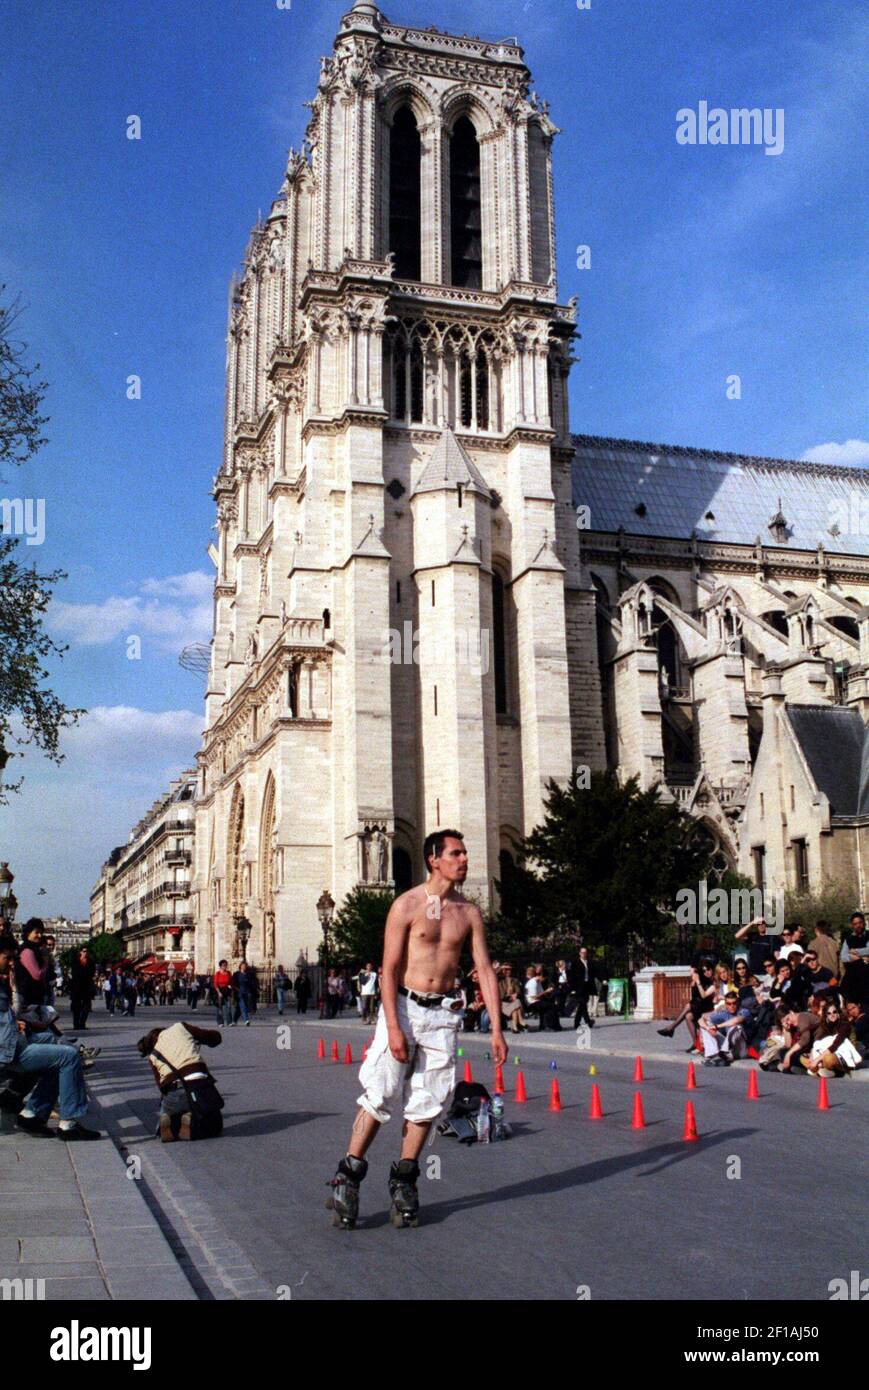 -- SIN MAGS, SIN VENTAS -- HISTORIA DE VIAJES de KRT SLUGED: WLT-EUROPE-PARIS-KIDS KRT FOTOGRAFÍA DE KRISTIN JACKSON/SEATTLE TIMES (julio de 4) UN patinador muestra sus cosas por la catedral de Notre Dame en París. Él y sus amigos levantaron conos de naranja para tejer. (Foto de cdm) 2004 Foto de stock